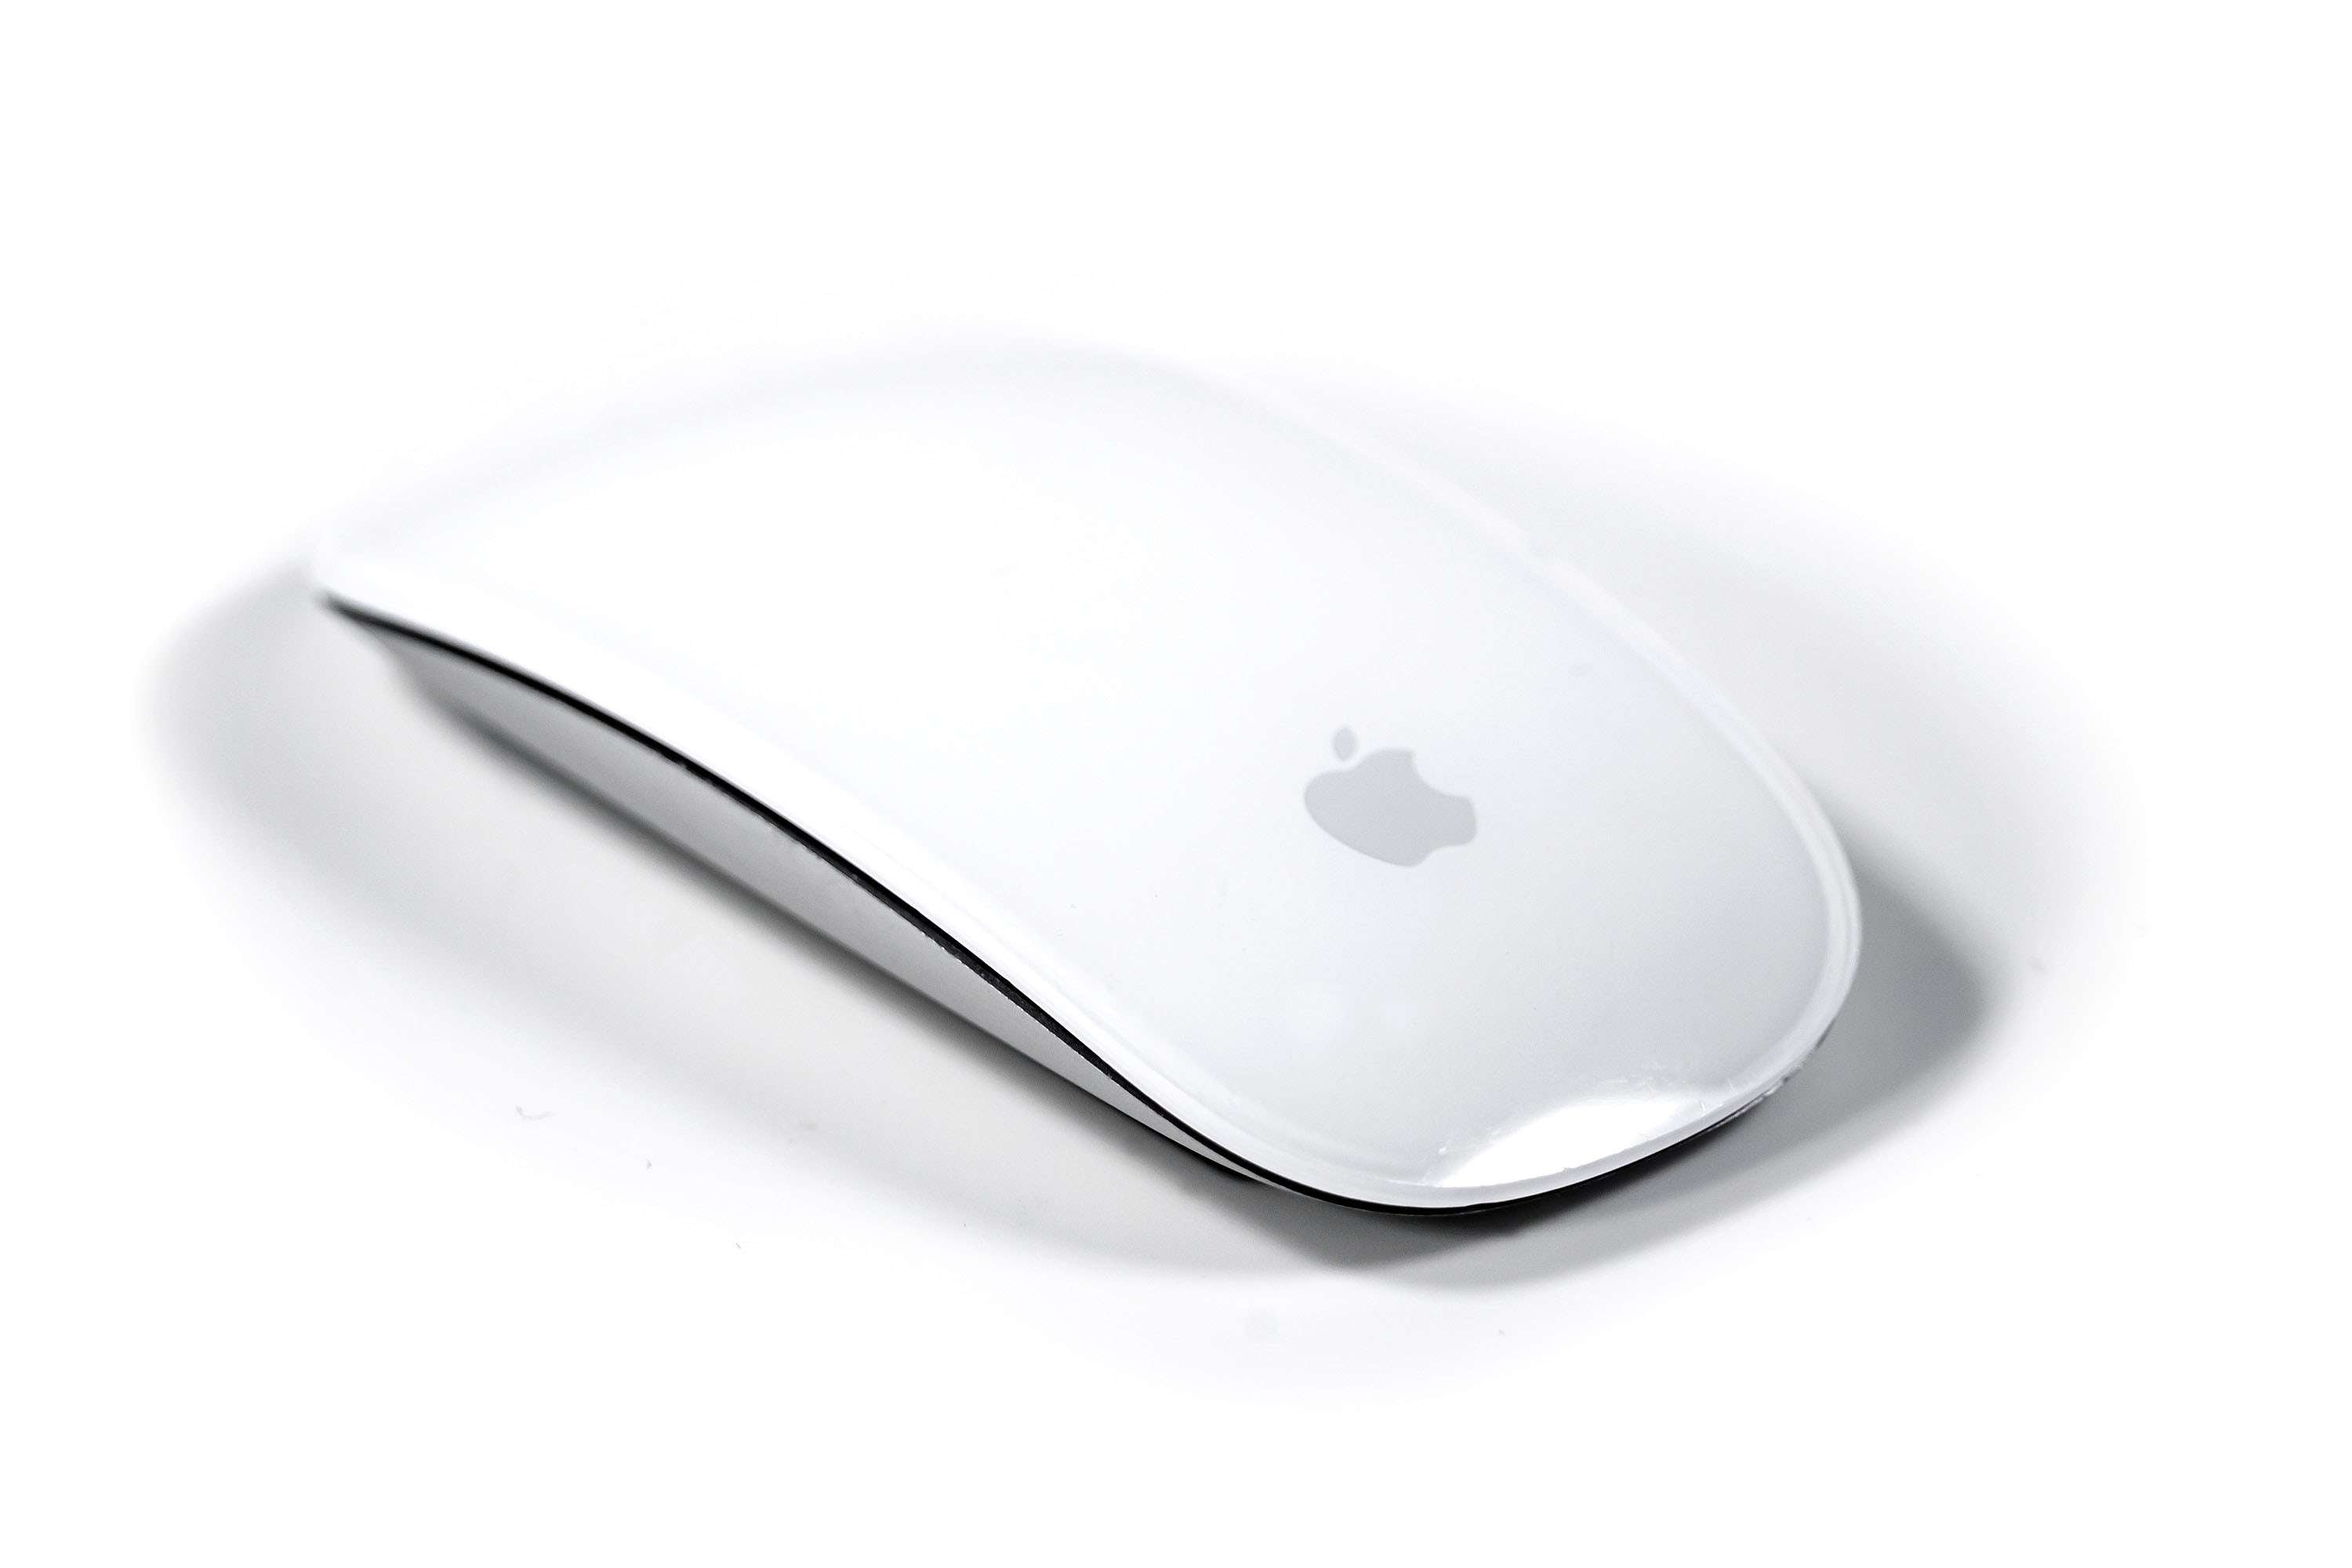 Apple Magic Mouse 2 